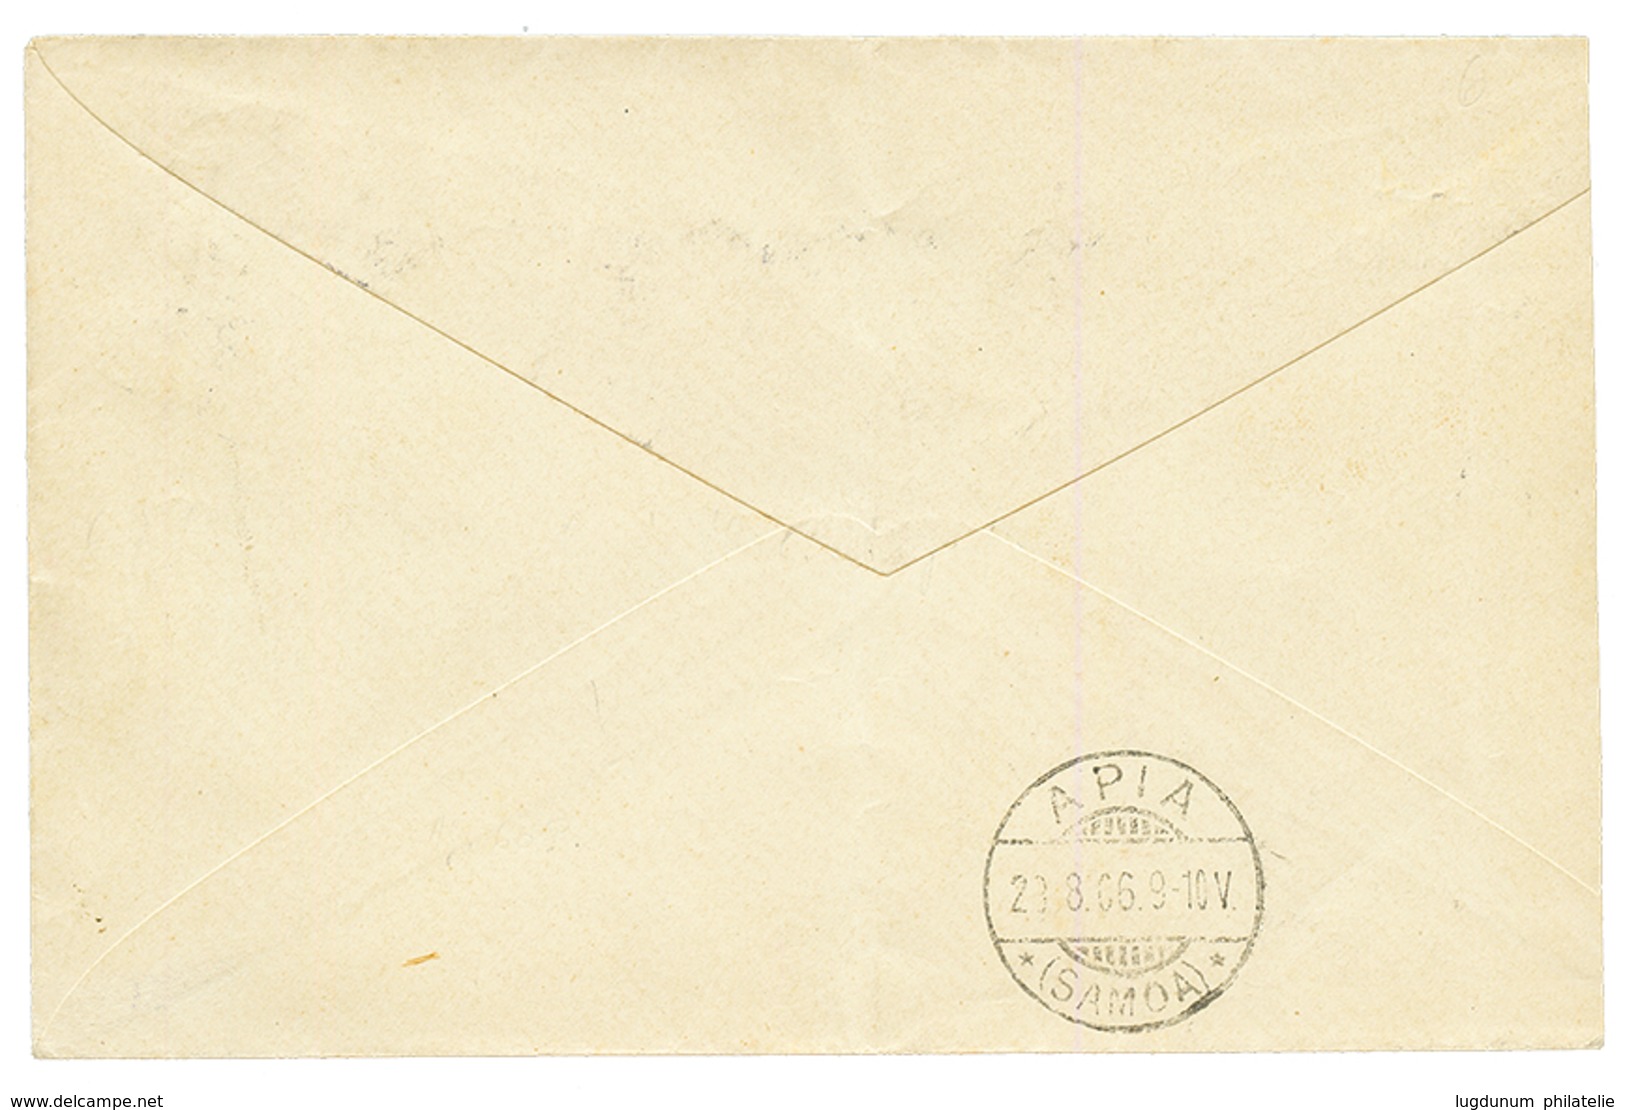 "SALELAVALU" : 1906 10pf Canc. SALELAVALU On Envelope To APIA. Superb. - Samoa